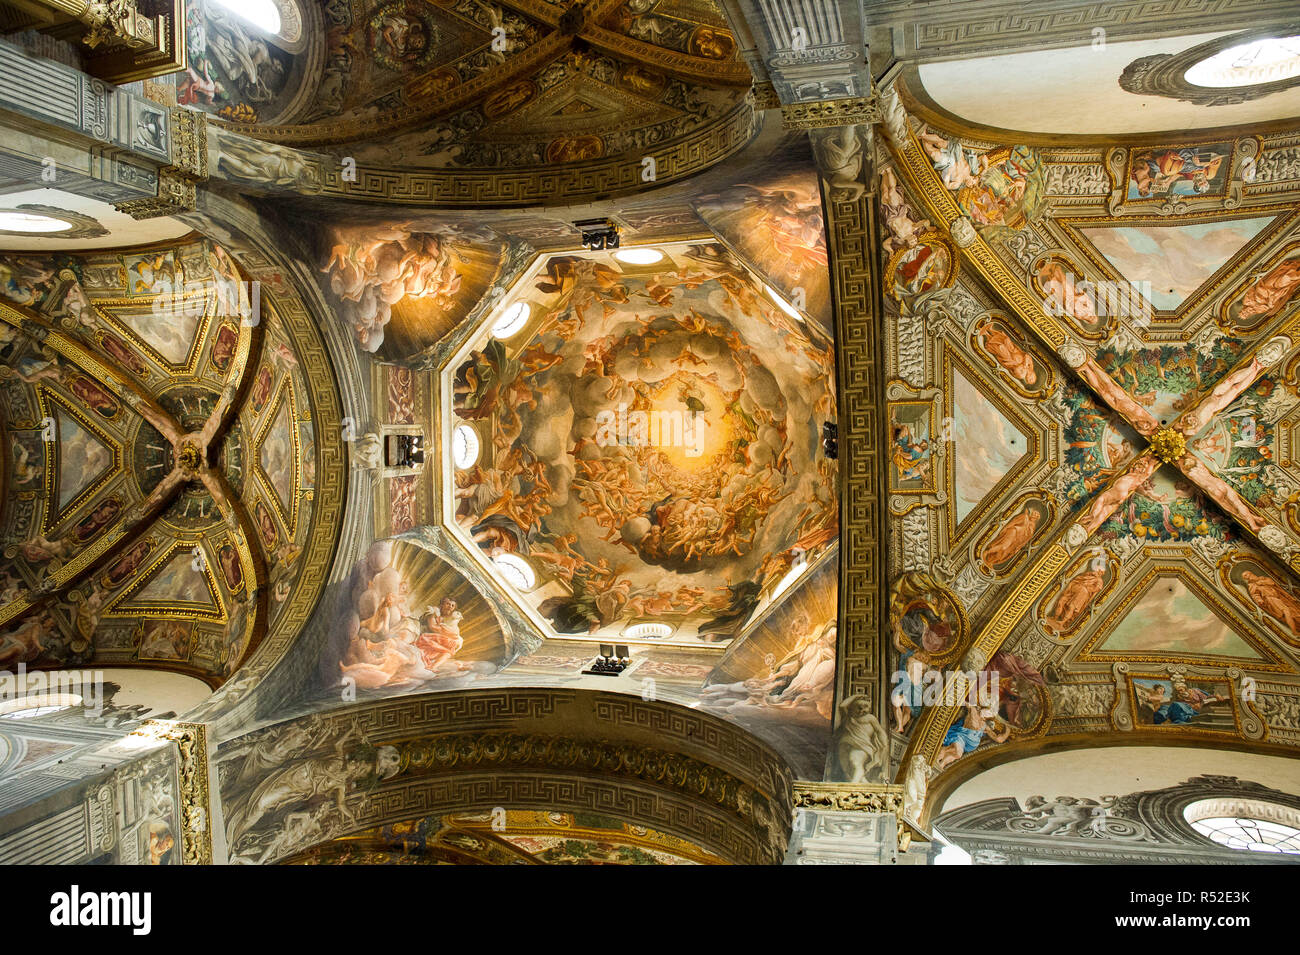 L'Italie, l'Emilie Romagne, Parme, la cathédrale Santa Maria Assunta, tirés de la coupole de l'Assomption de la Vierge peint par Simon Vouet Banque D'Images